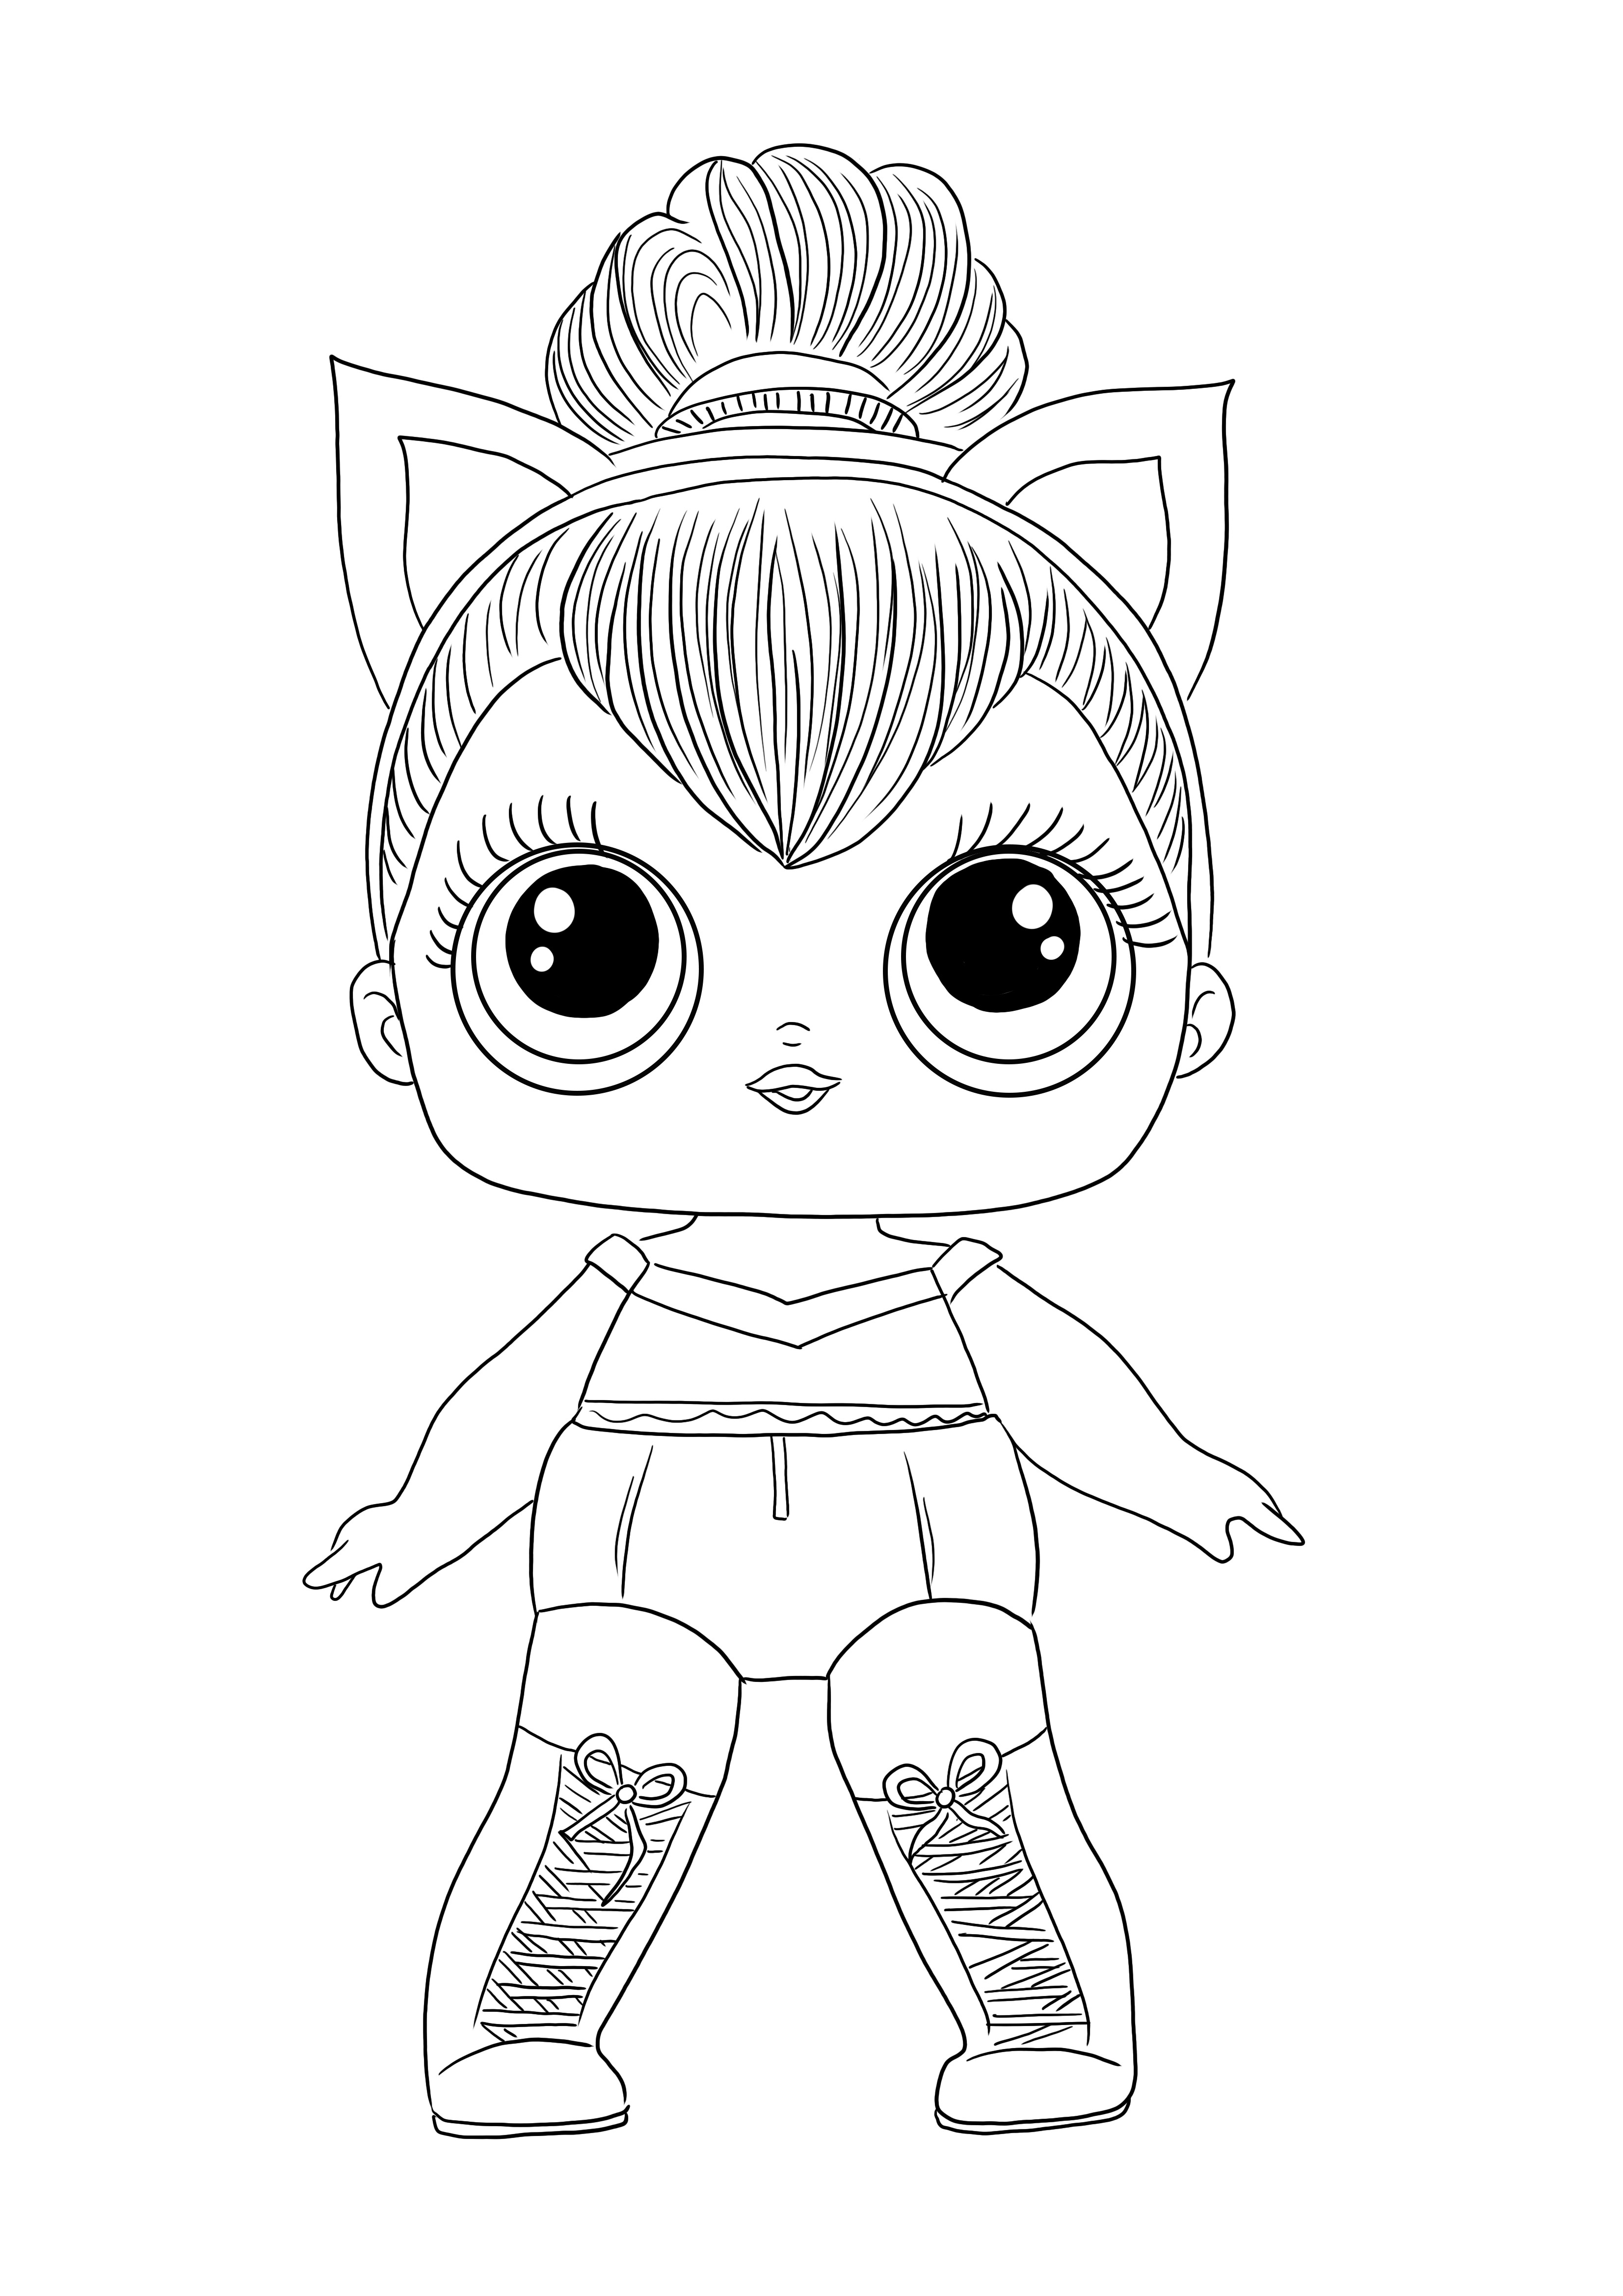 Imprime y colorea gratis la imagen de LOL Doll Kitty Queen para todos los niños